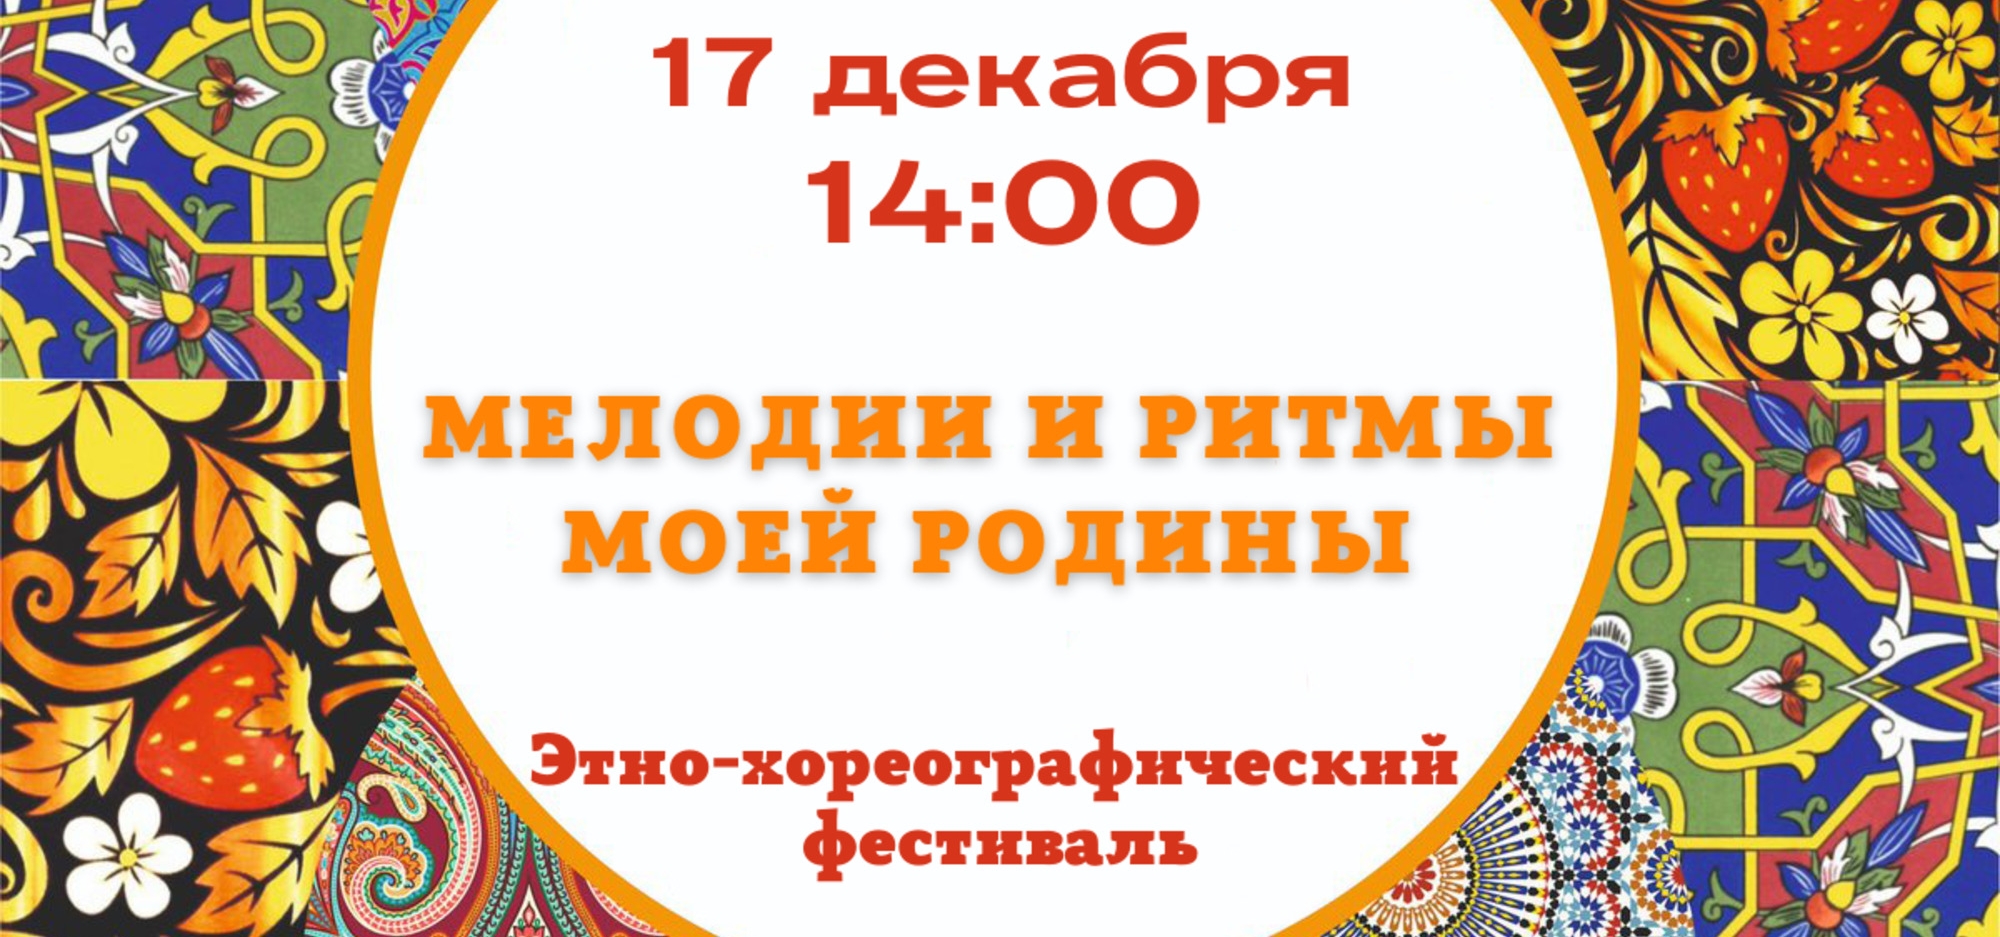 В Алексеевске соберутся на этно-хореографический фестиваль